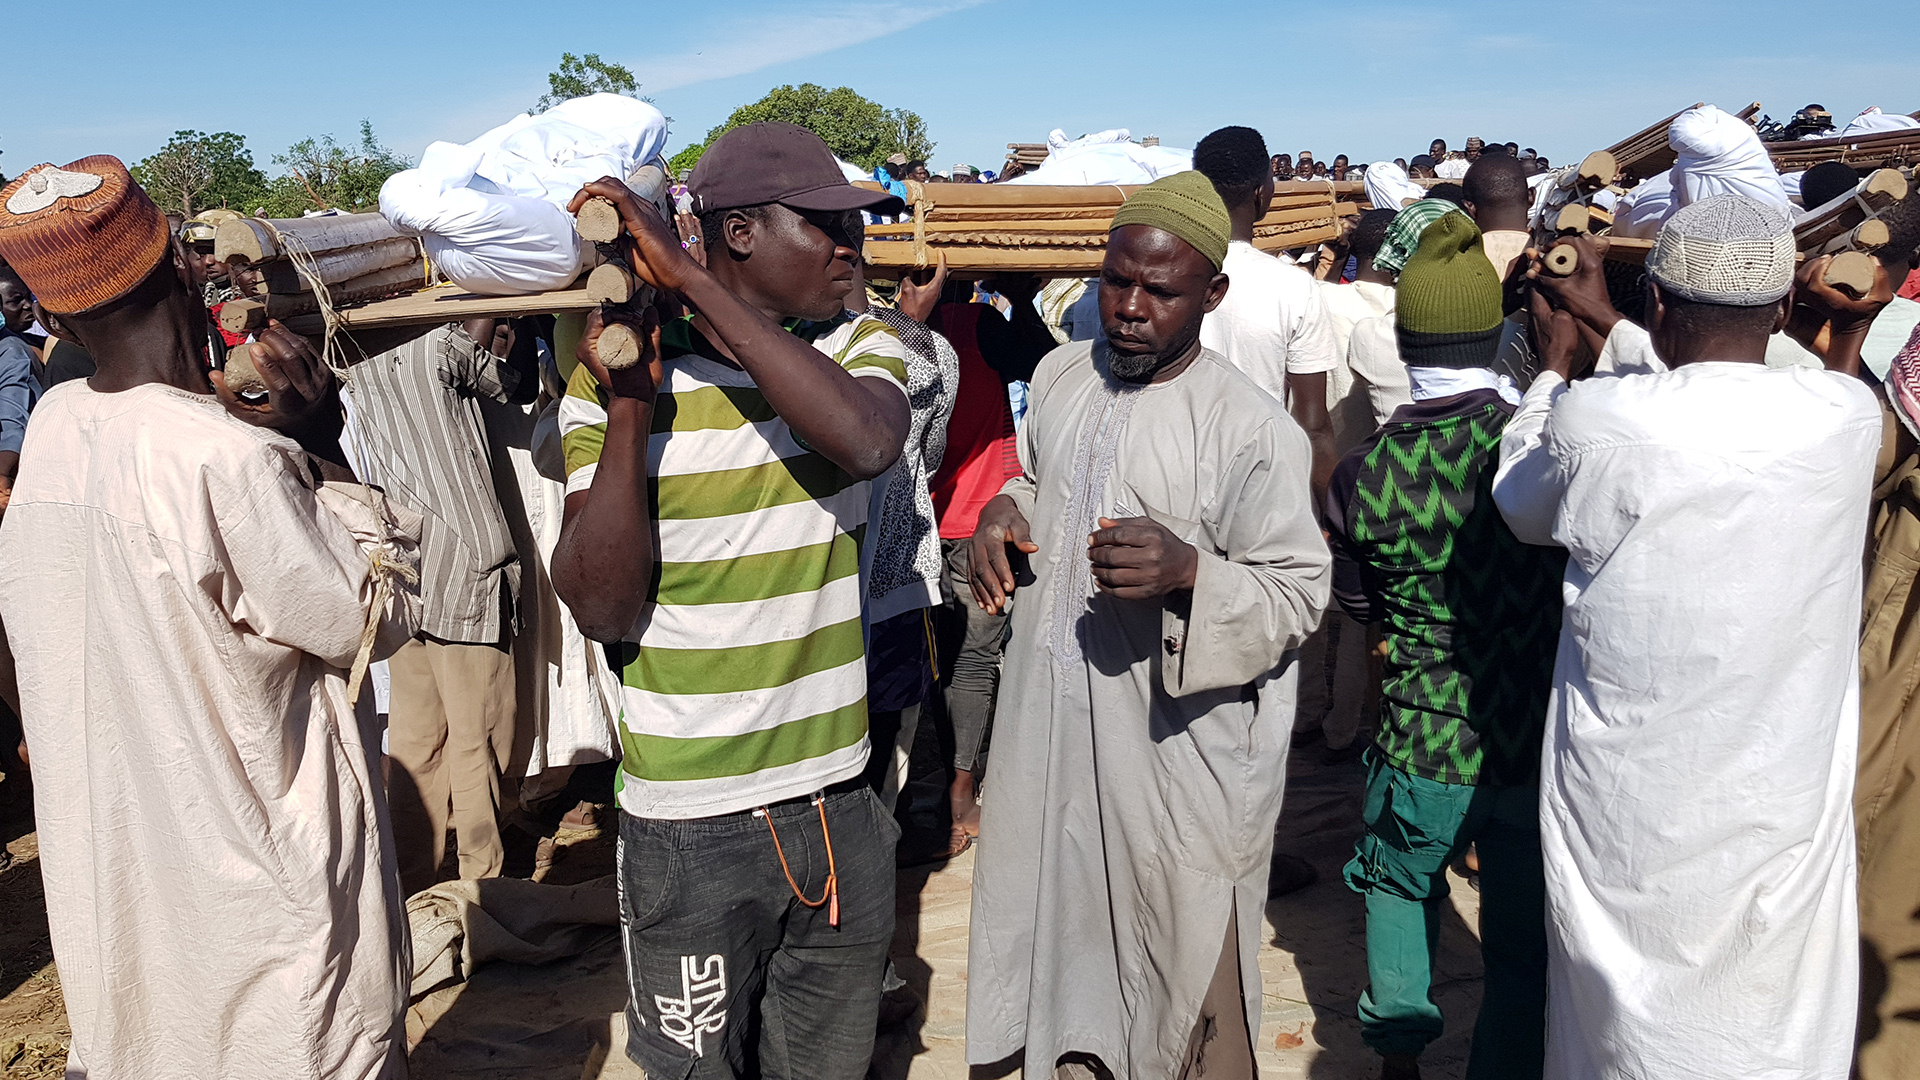 Beerdigung von 43 von Boko Haram getöteten Landarbeitern, Zabarmari/NIgeria. | REUTERS